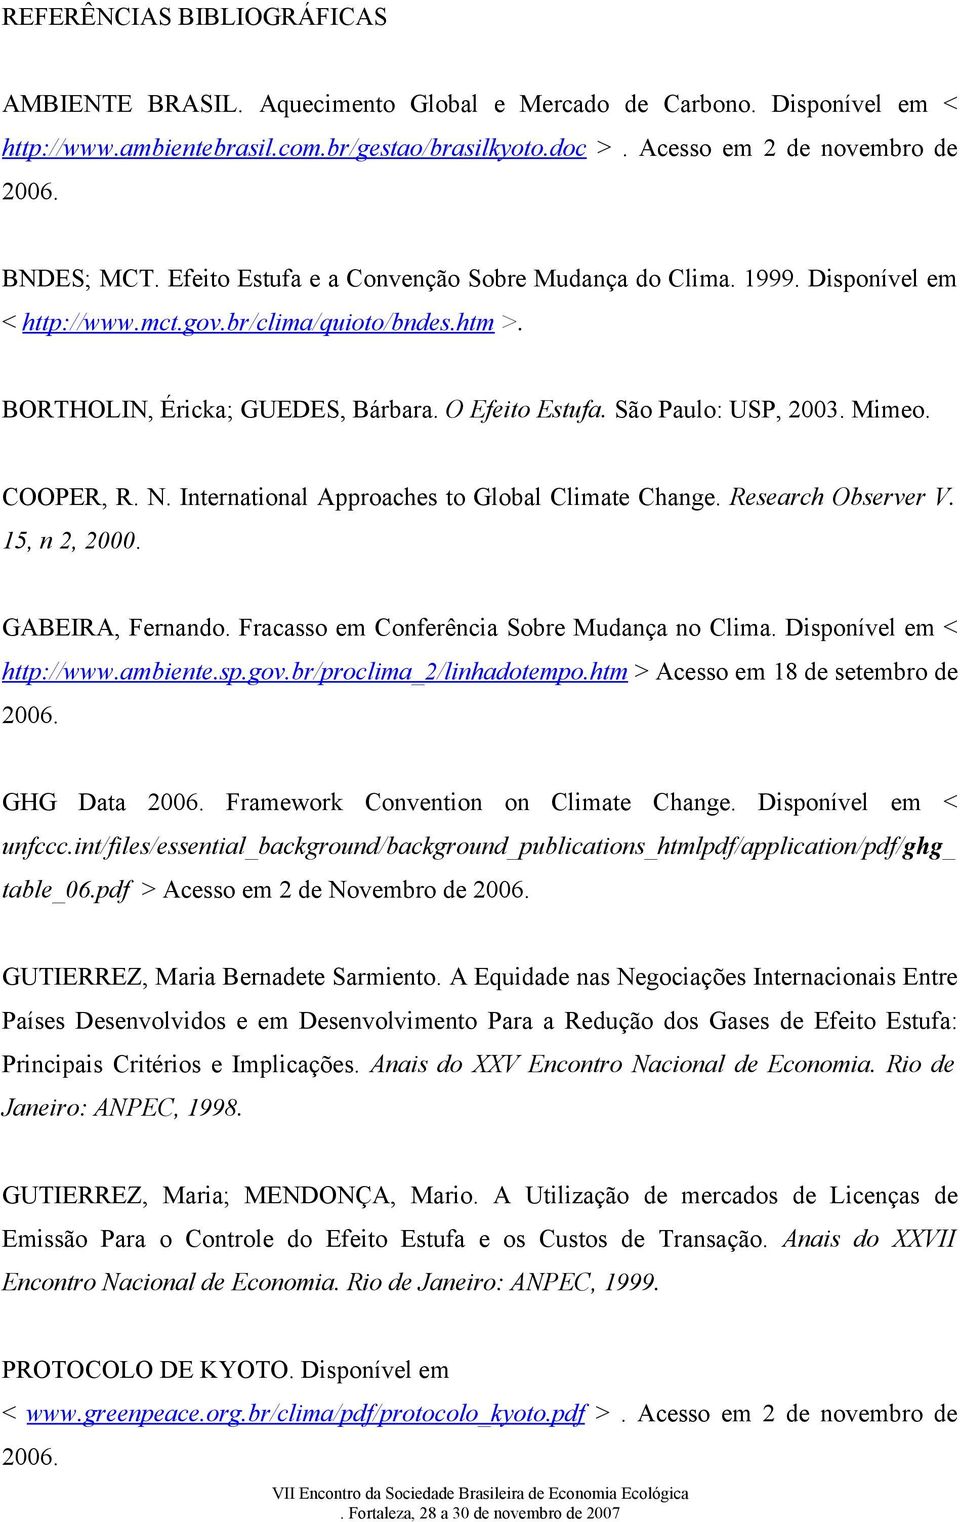 São Paulo: USP, 2003. Mimeo. COOPER, R. N. International Approaches to Global Climate Change. Research Observer V. 15, n 2, 2000. GABEIRA, Fernando. Fracasso em Conferência Sobre Mudança no Clima.